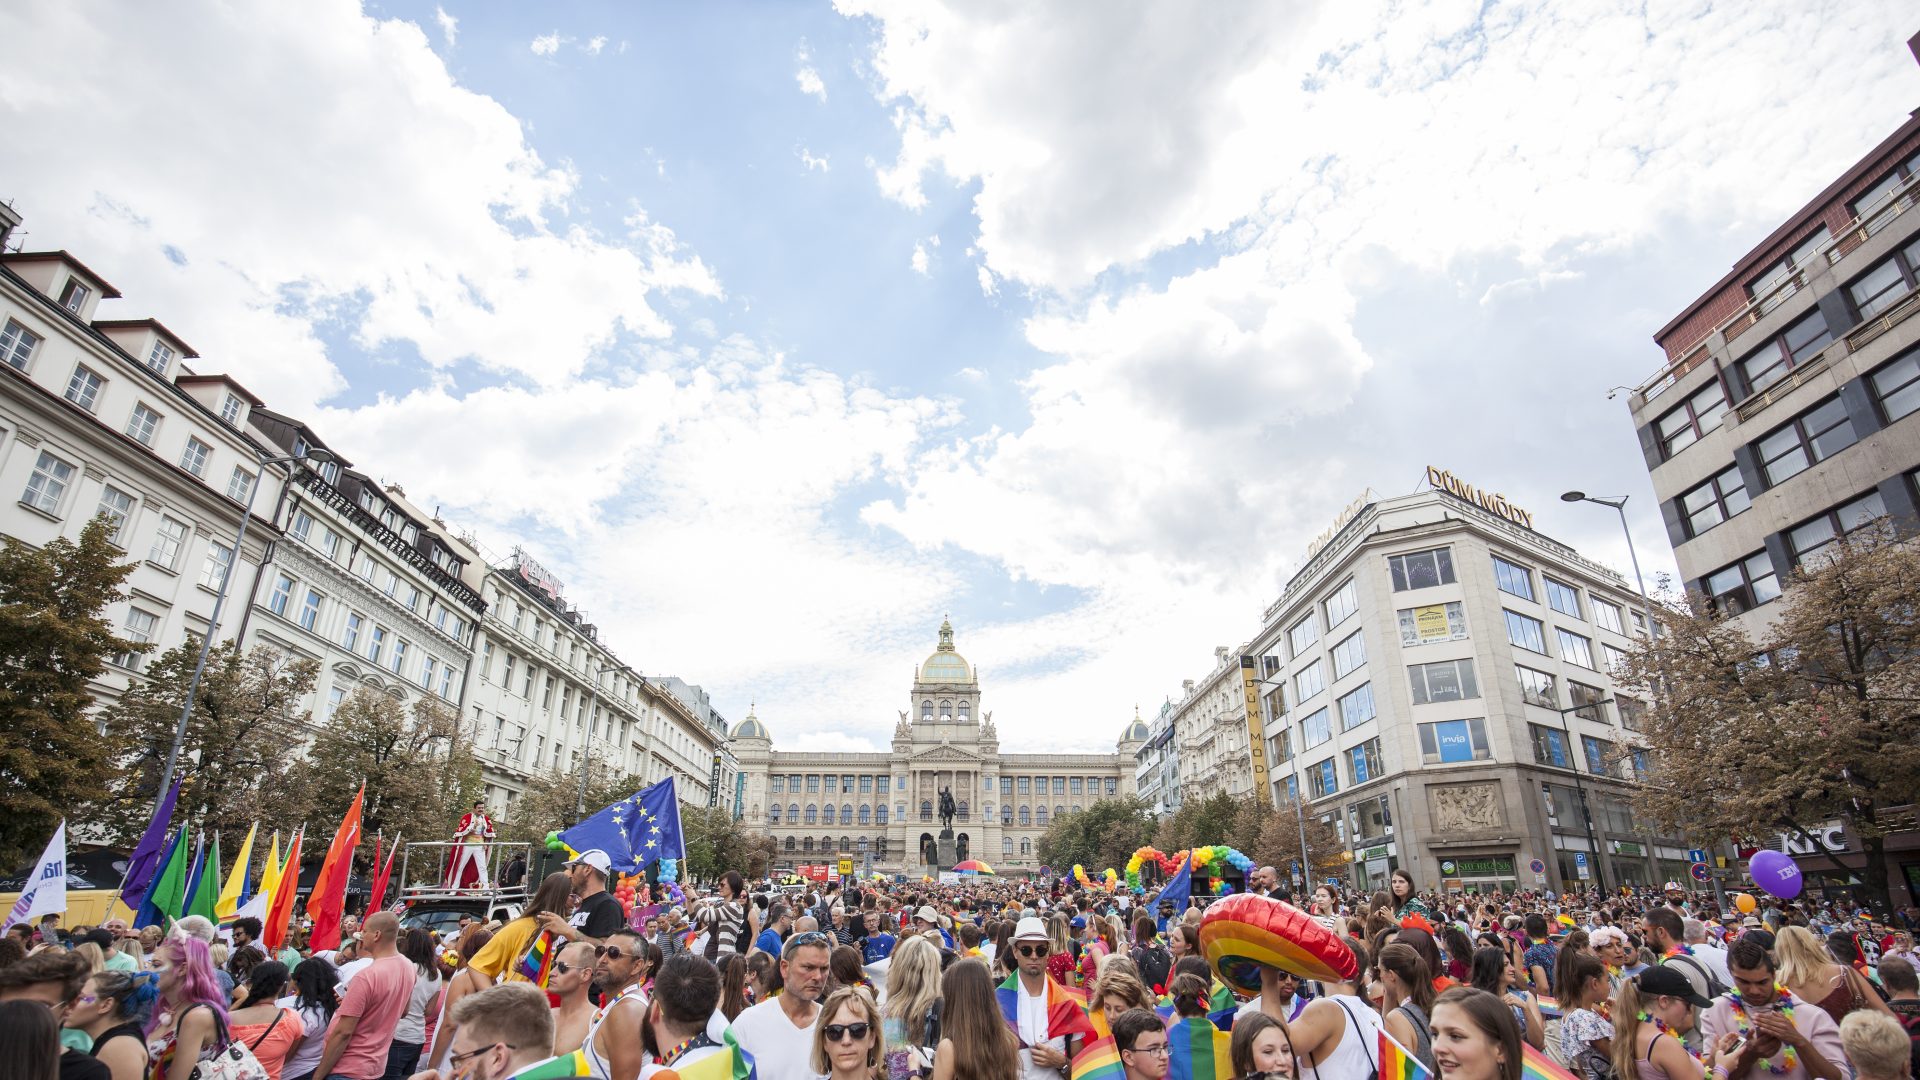 Průvod festivalu Prague Pride na Václavském náměstí - dav duhových lidí a v pozadí Národní muzeum